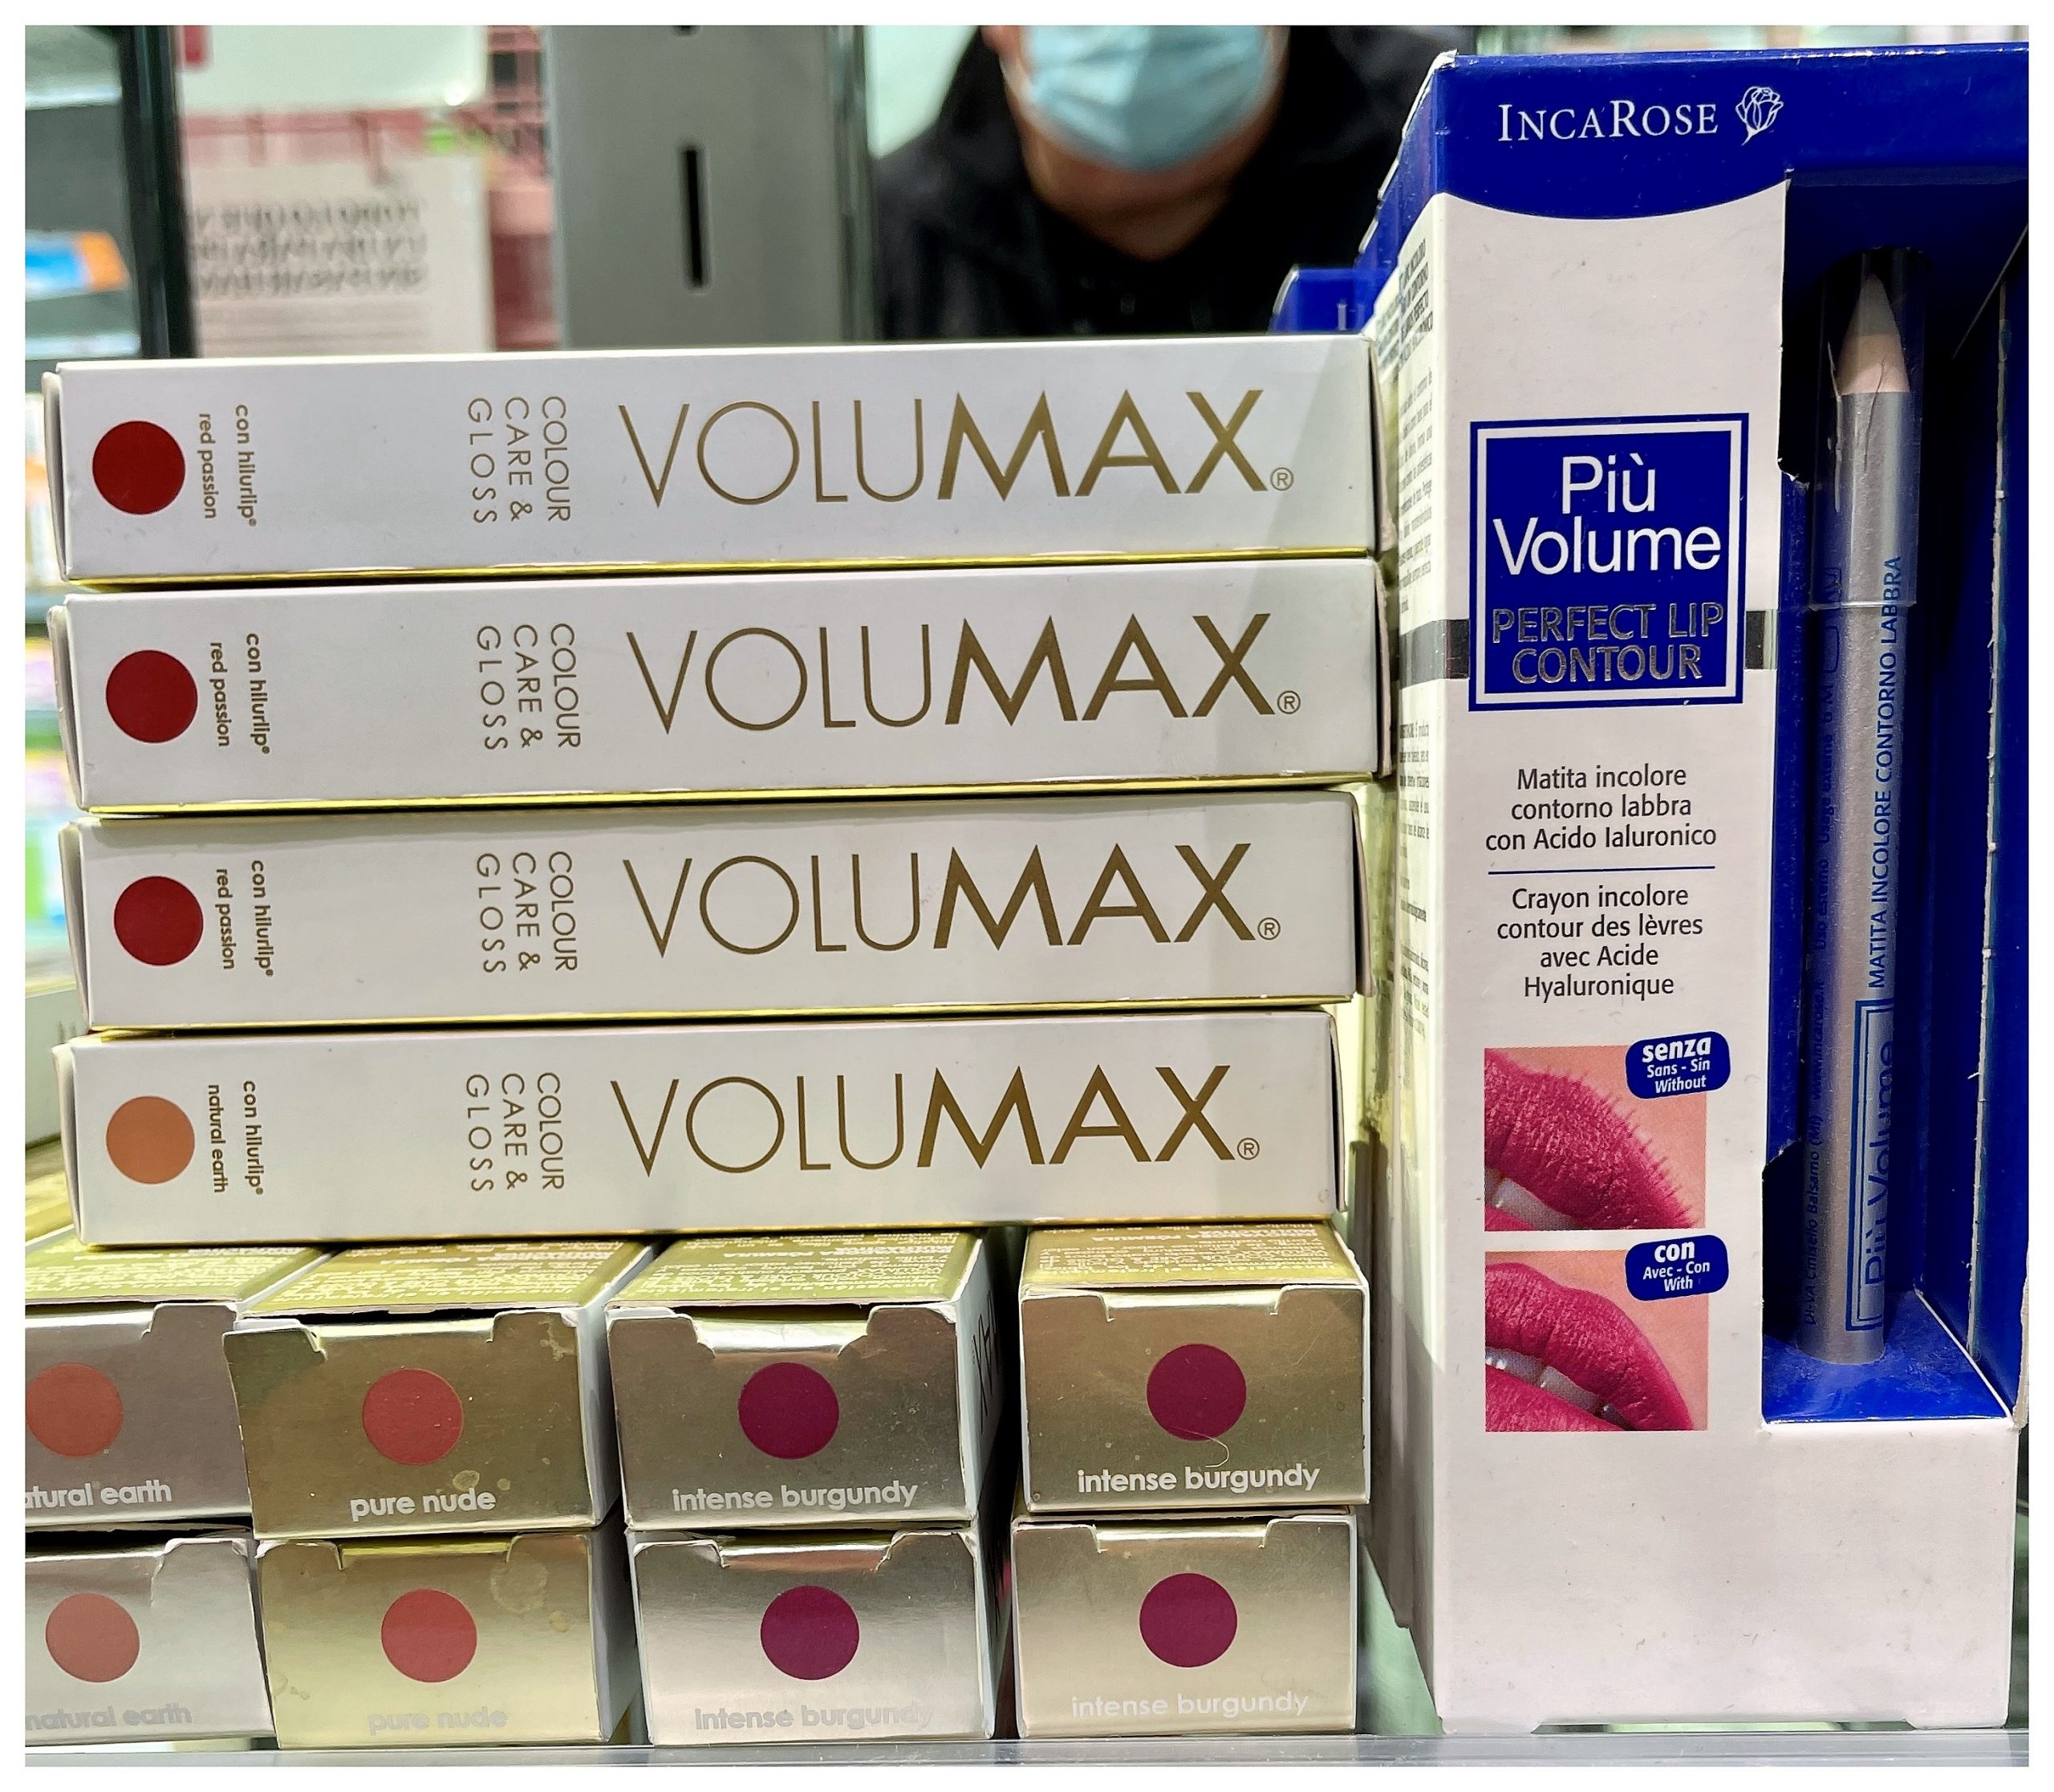 Volumax Colour Care & Gloss Supreme Pink Seduction 15 ml. Phergal Laboratorios Labios voluminosos e hidratados brillantes y con un toque de color. +30% sin cirugía. +40% hidratación y relleno en 1 hora